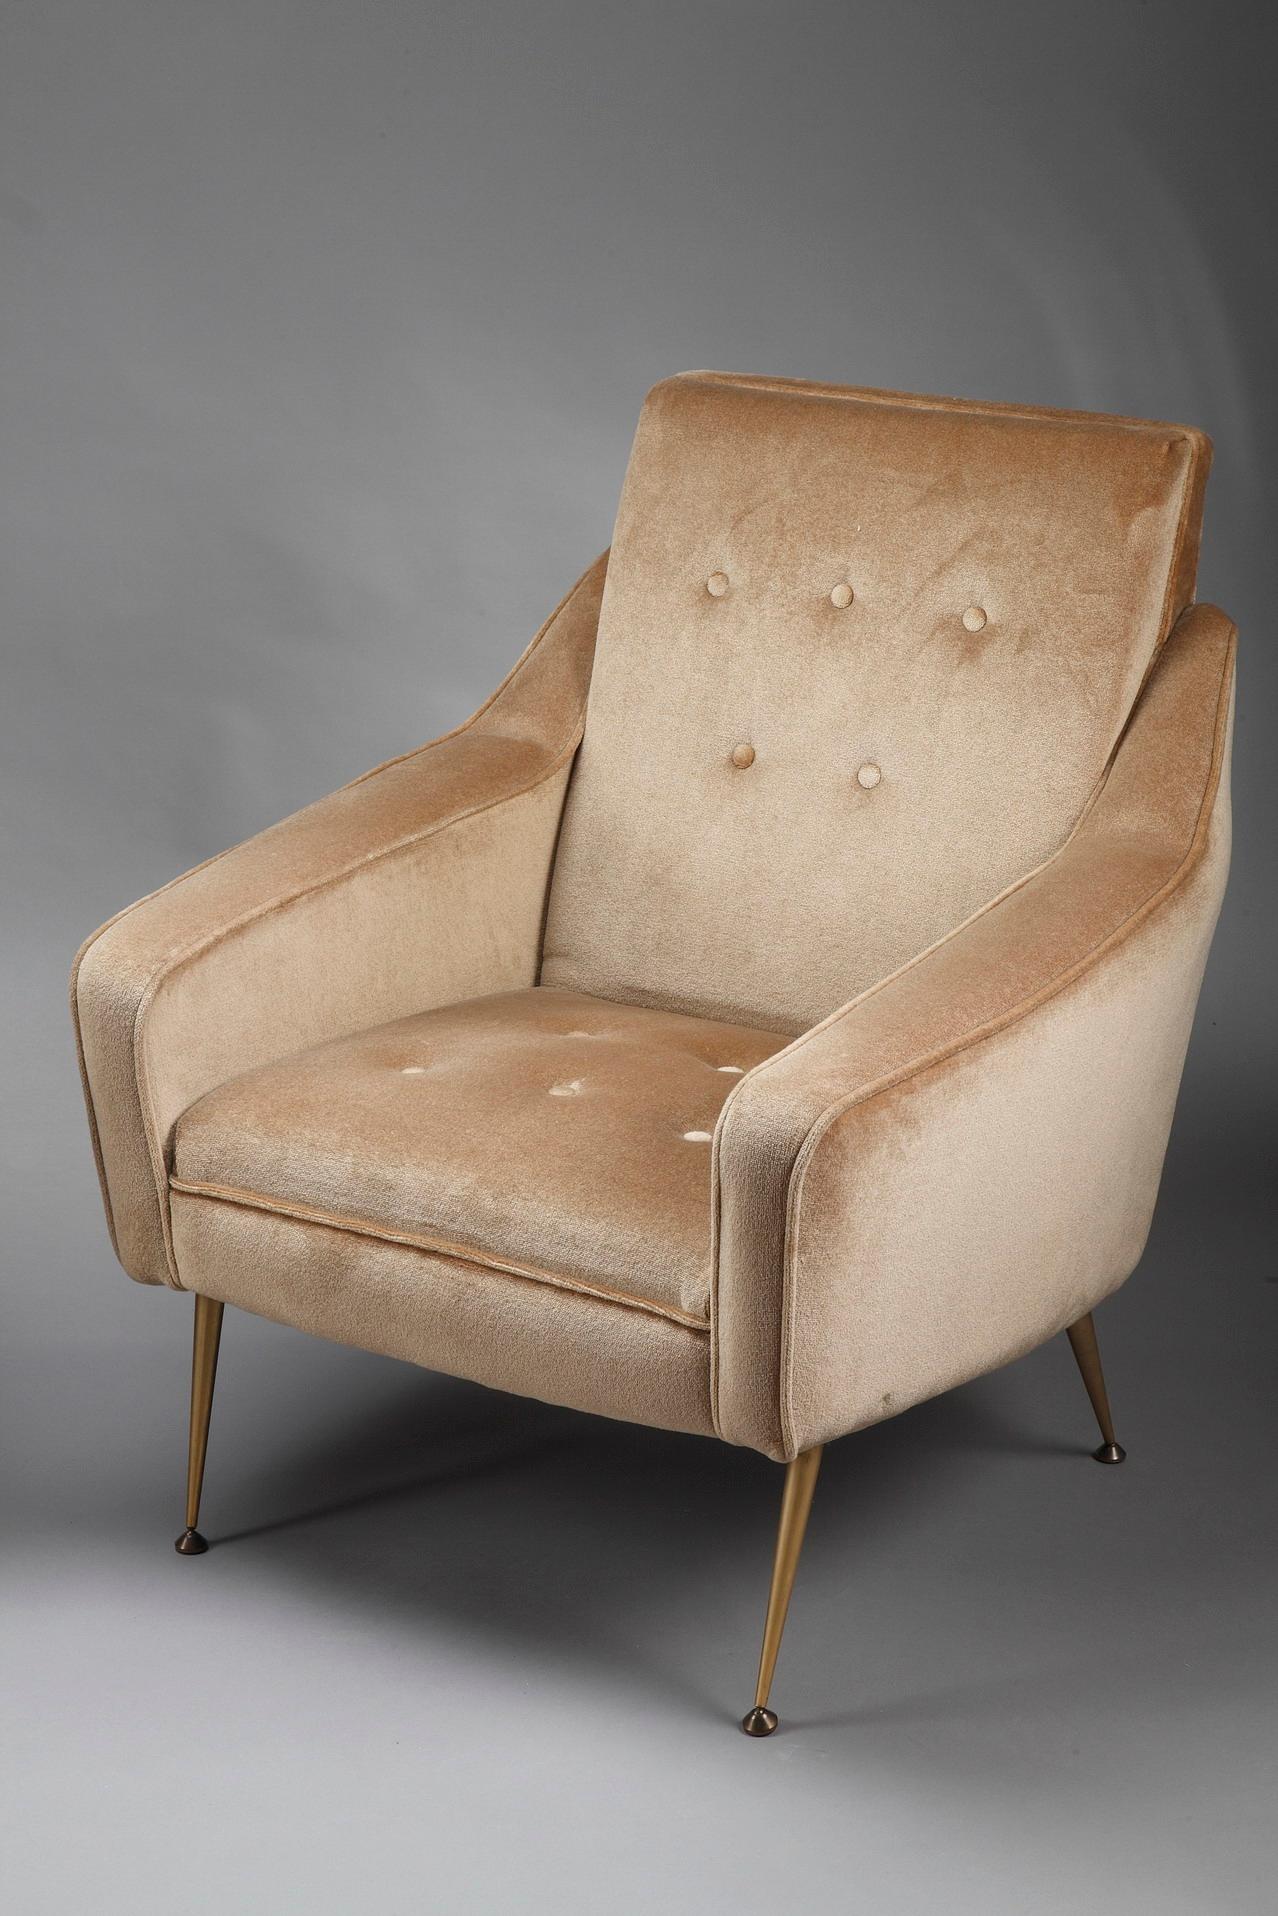 Ein Paar imposante Bergère-Stühle aus ockerfarbenem Samt, hergestellt in den 1950er Jahren, mit vergoldeten Metallbogenbeinen. Die Hirtin ist ein großer, bequemer Sessel, dessen massive Seiten bis zum Gürtel reichen. Diese Art von Möbeln erschien